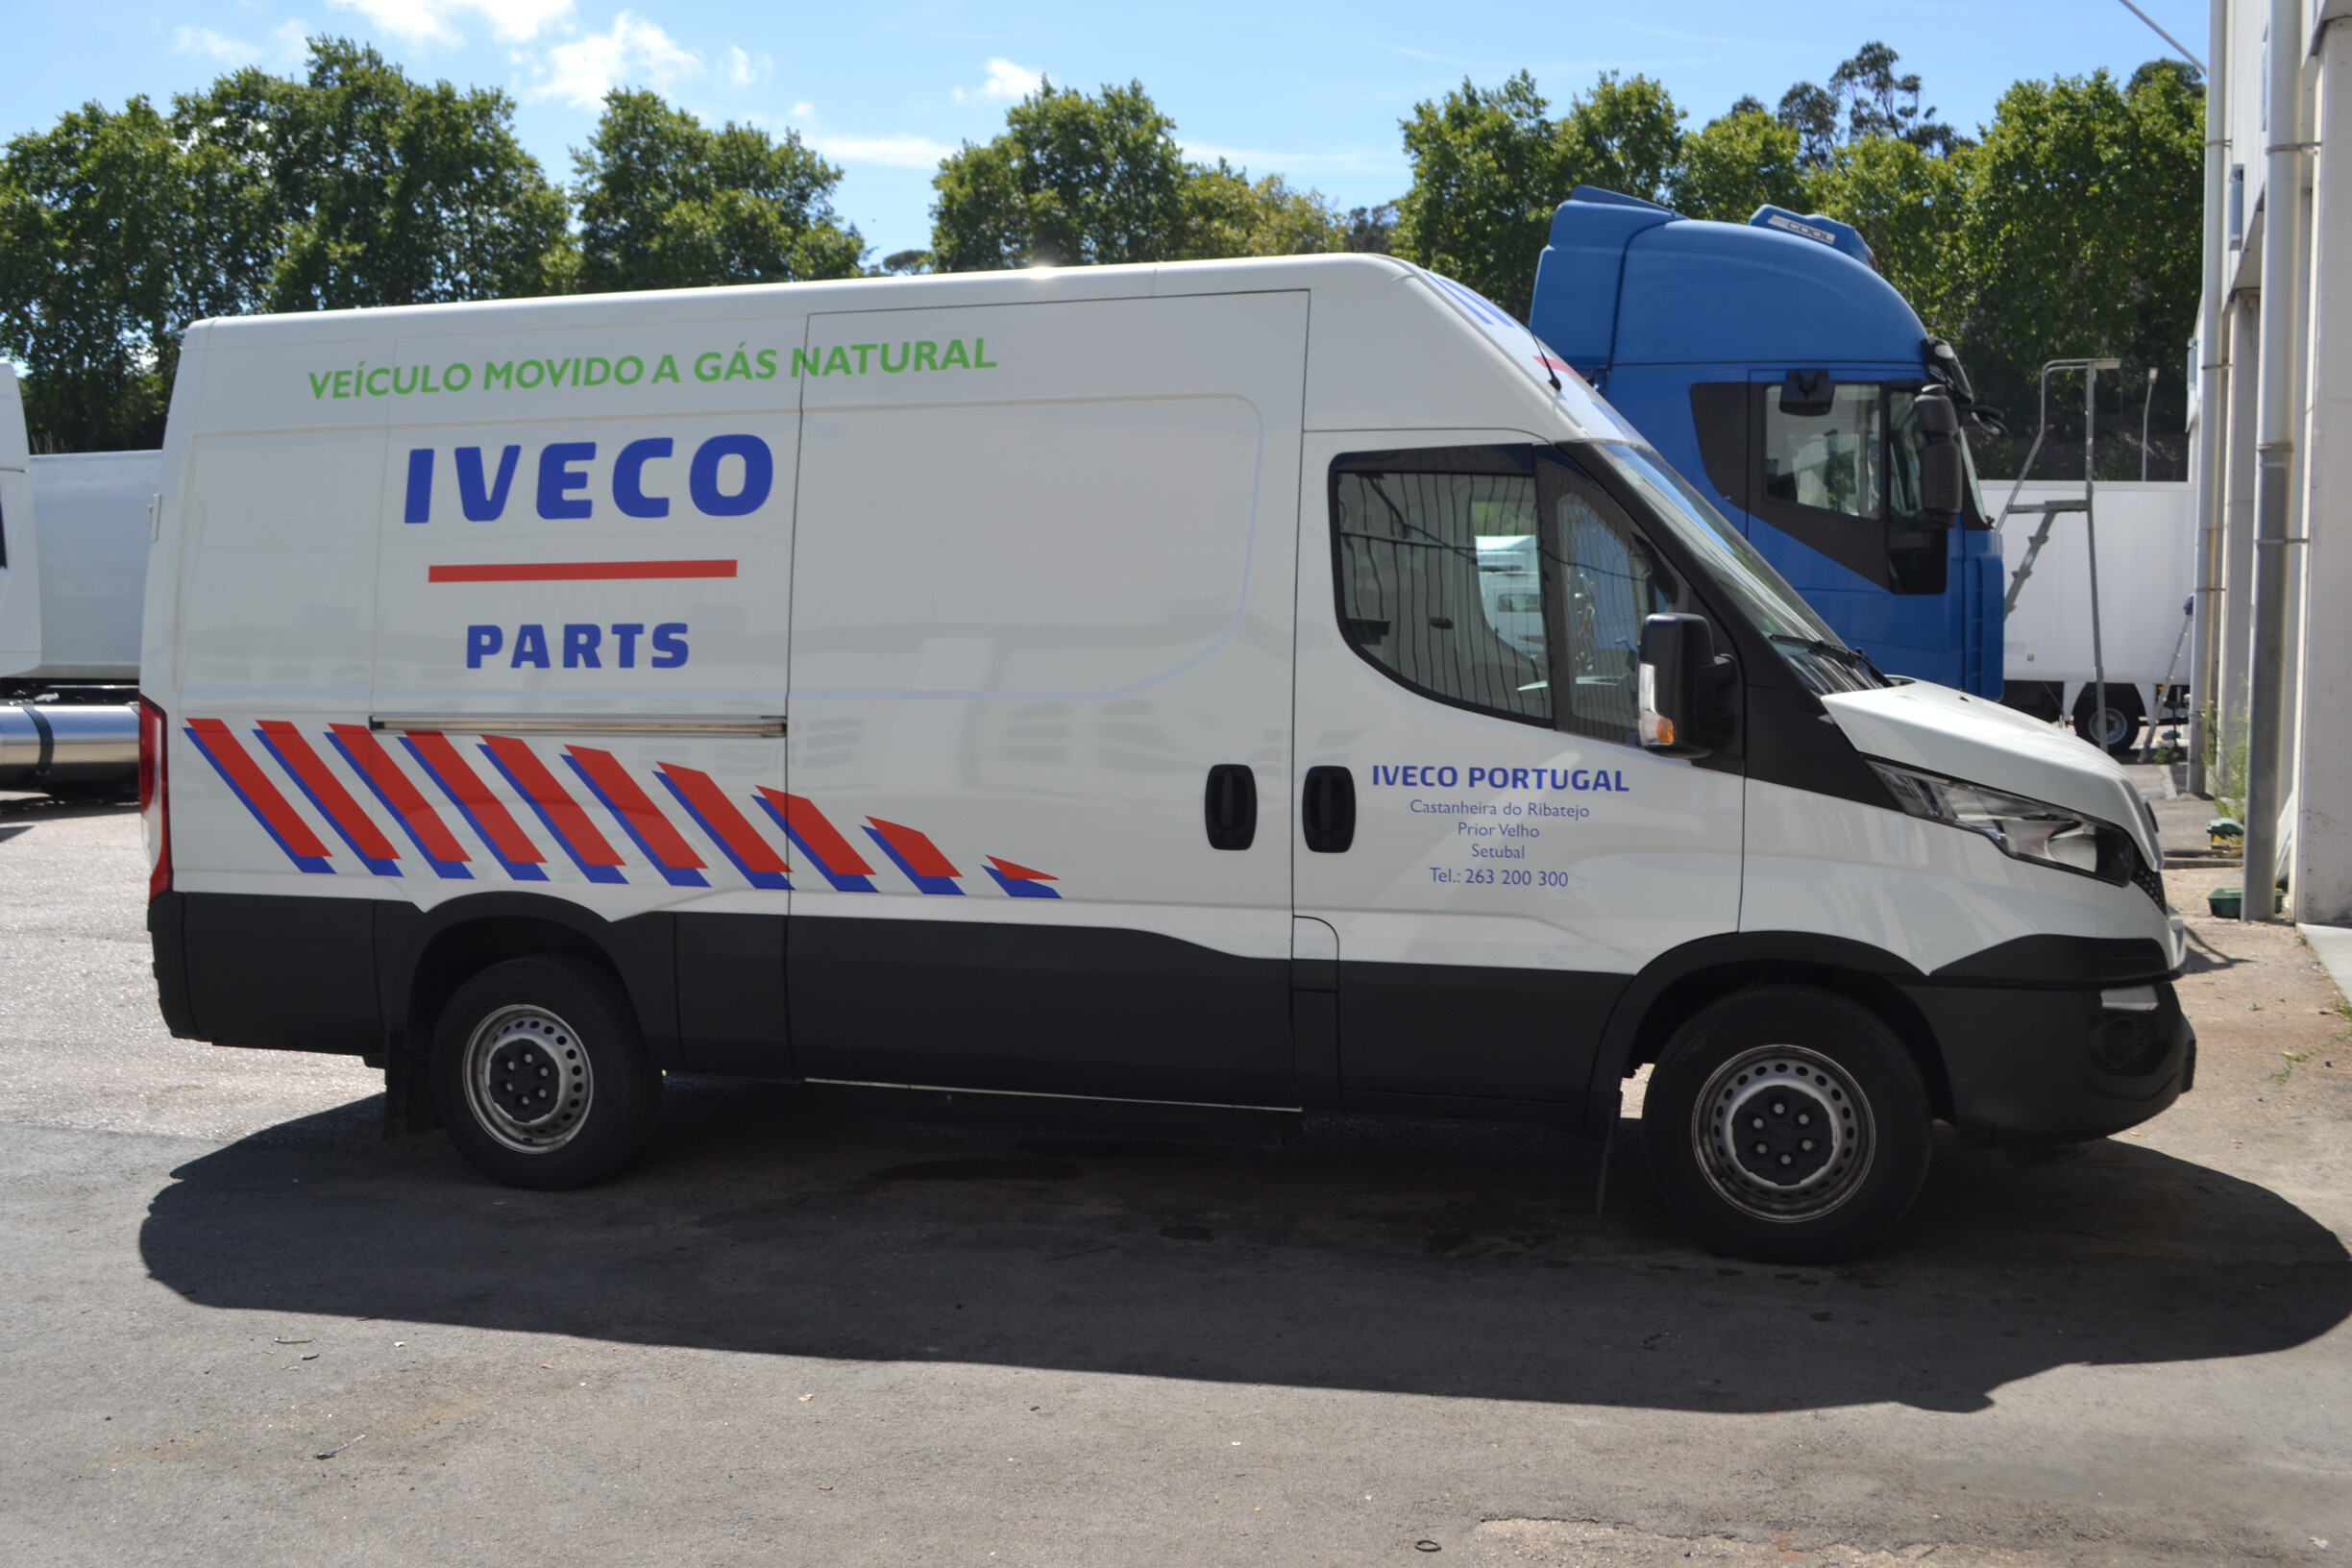 A Iveco Portugal dispõe de uma viatura própria para distribuição de peças pelo país.